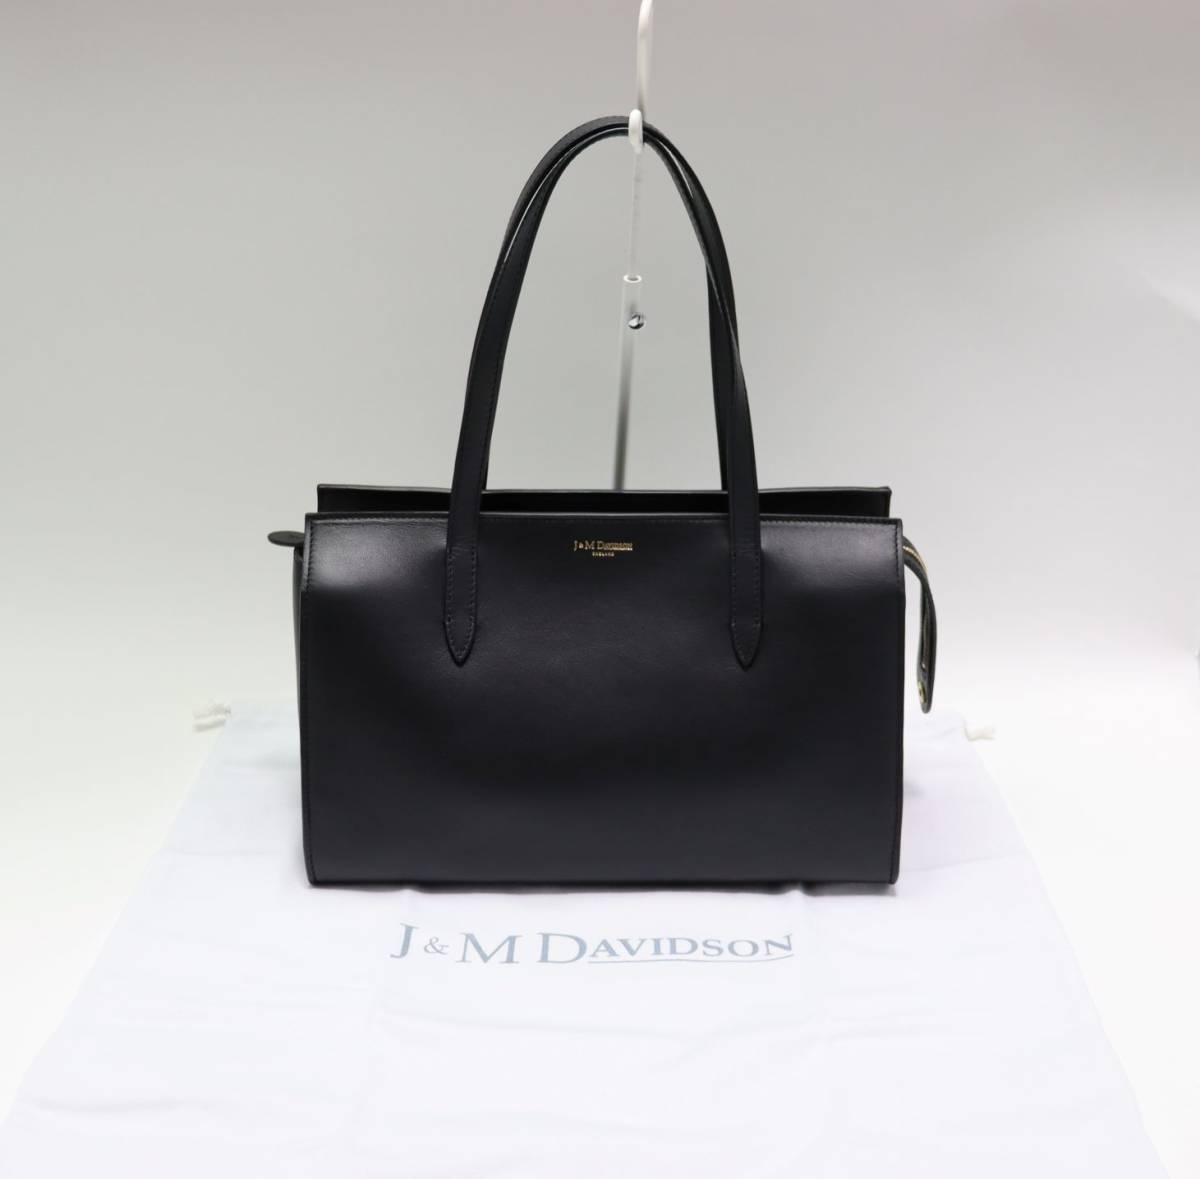  新品 J&M DAVIDSON ジェイ&エム デヴィットソン バッグ ELLY 1703 フォーマル ブラック 正規品